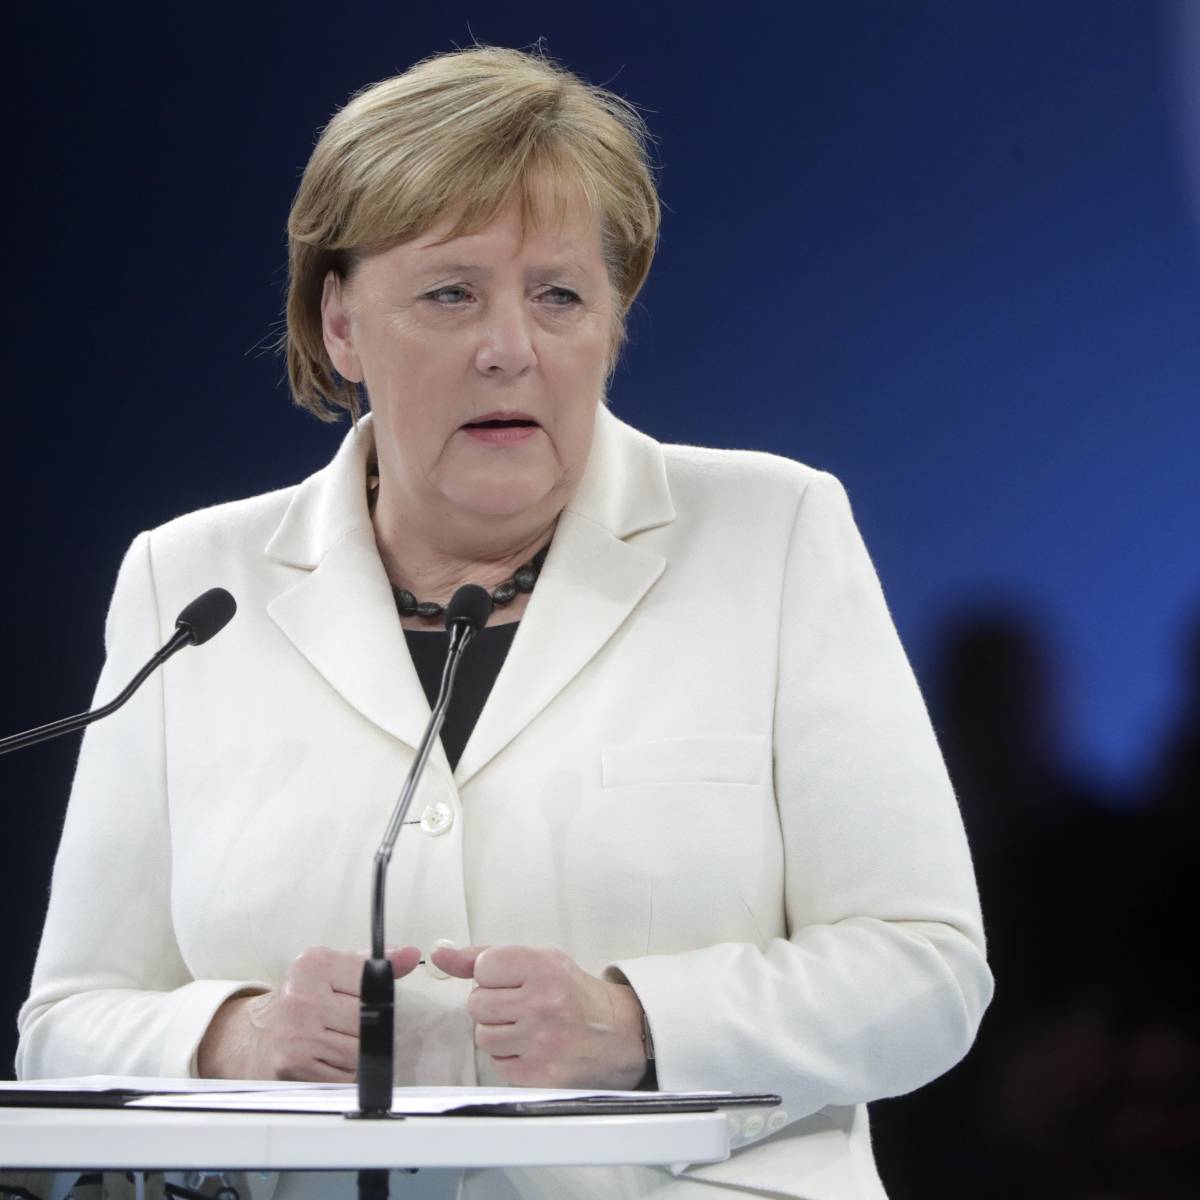 Меркель снова стало дурно на протокольном мероприятии